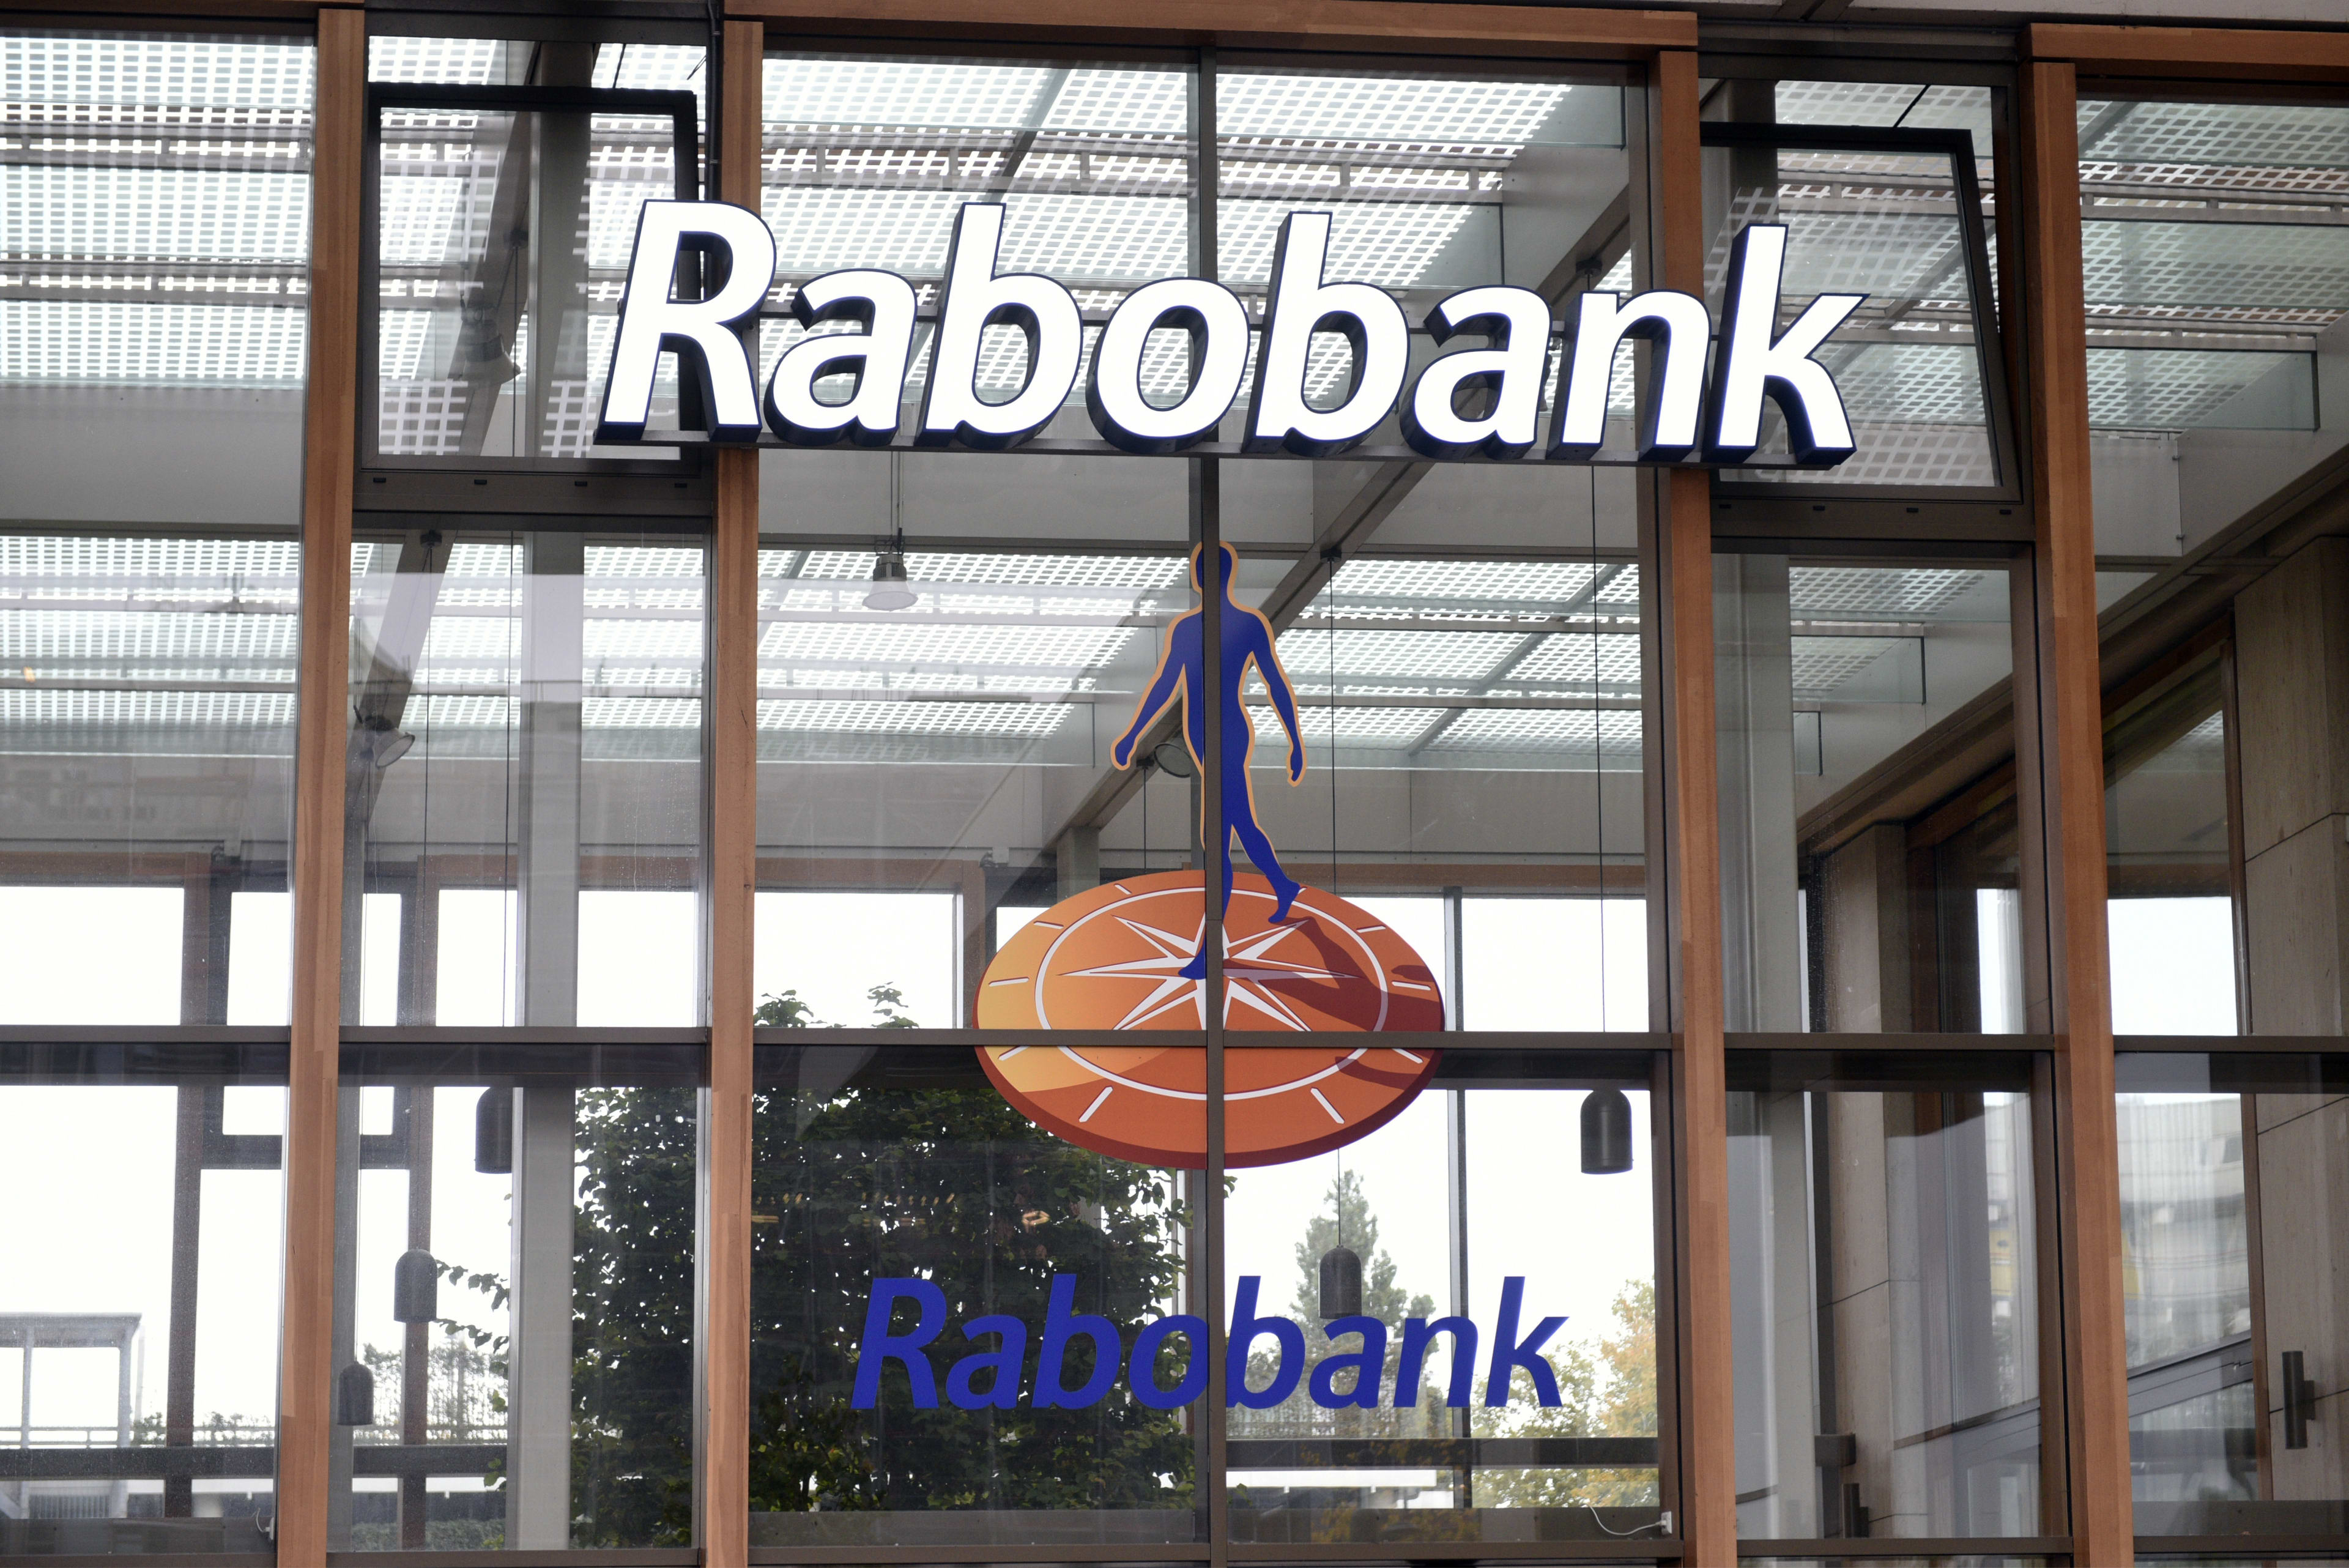 Sparen gaat weer iets meer lonen: 0,5 procent rente bij Rabobank